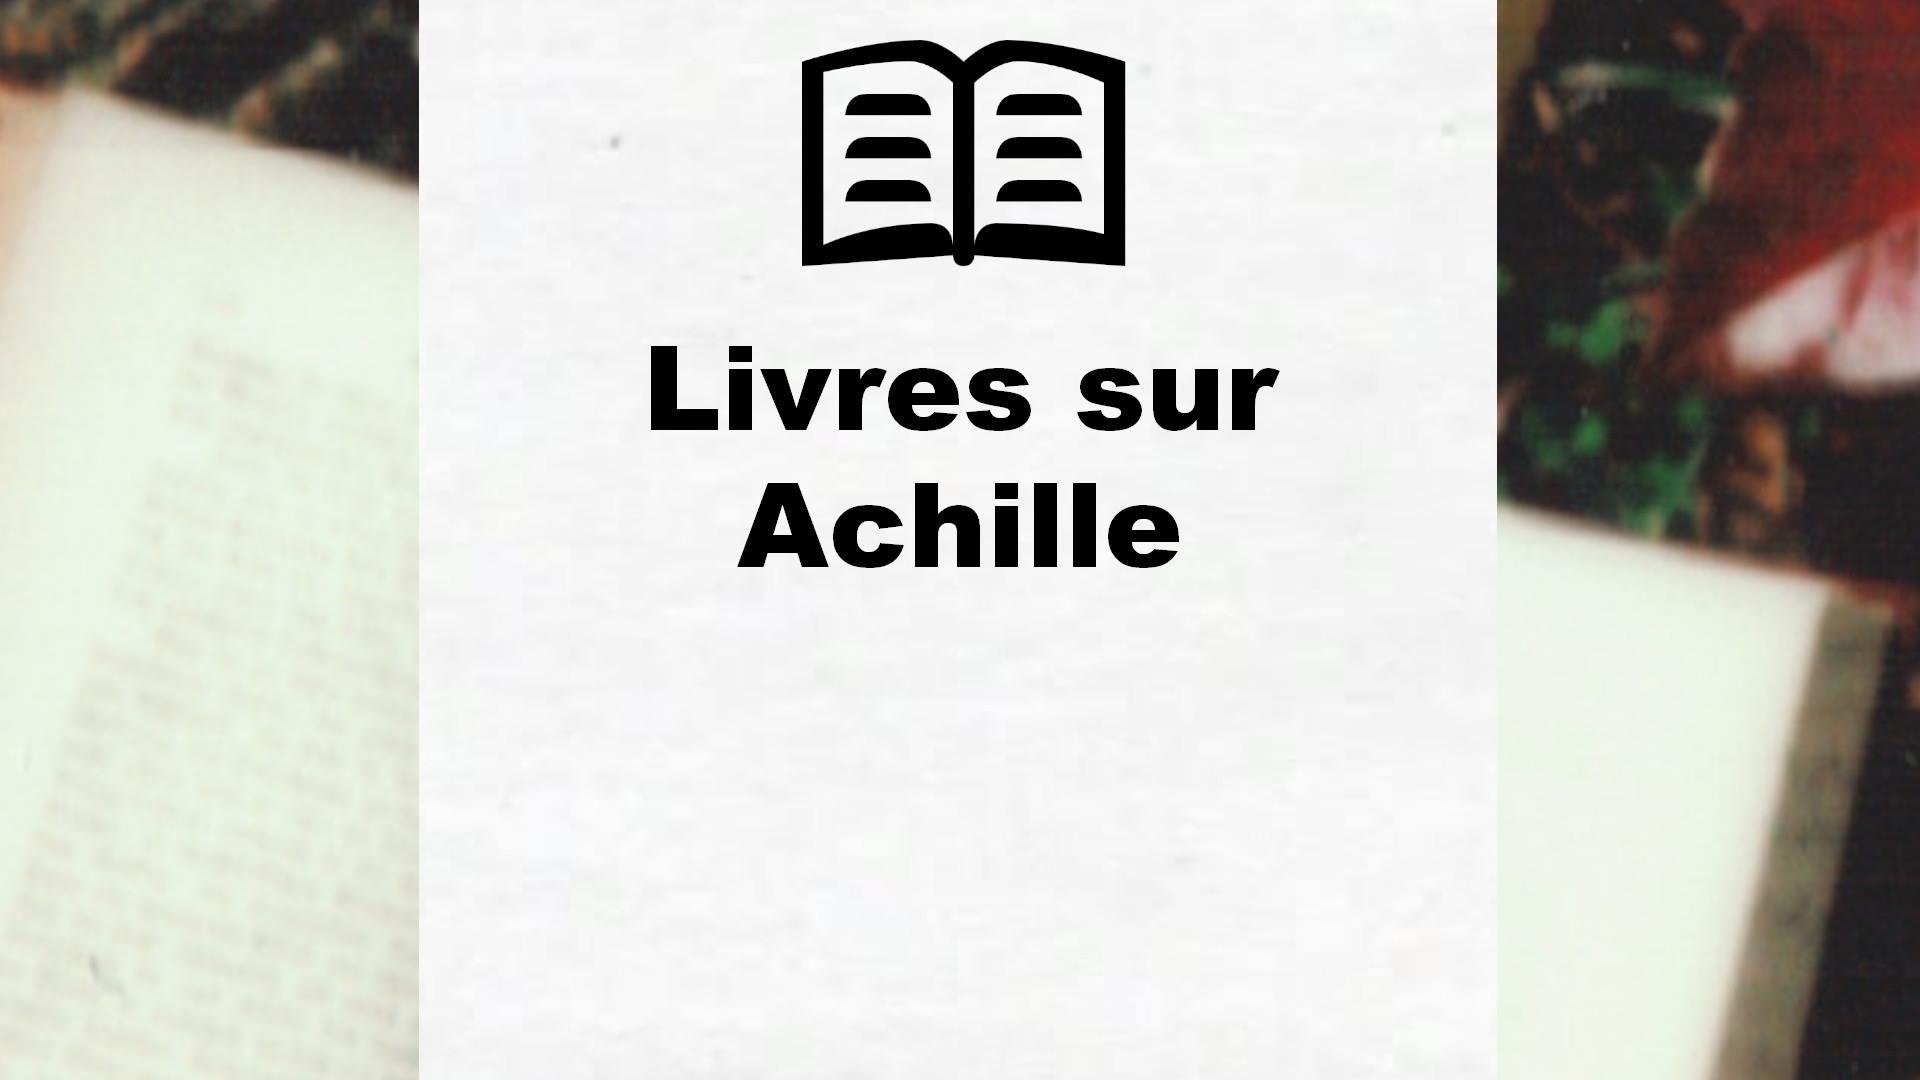 Livres sur Achille